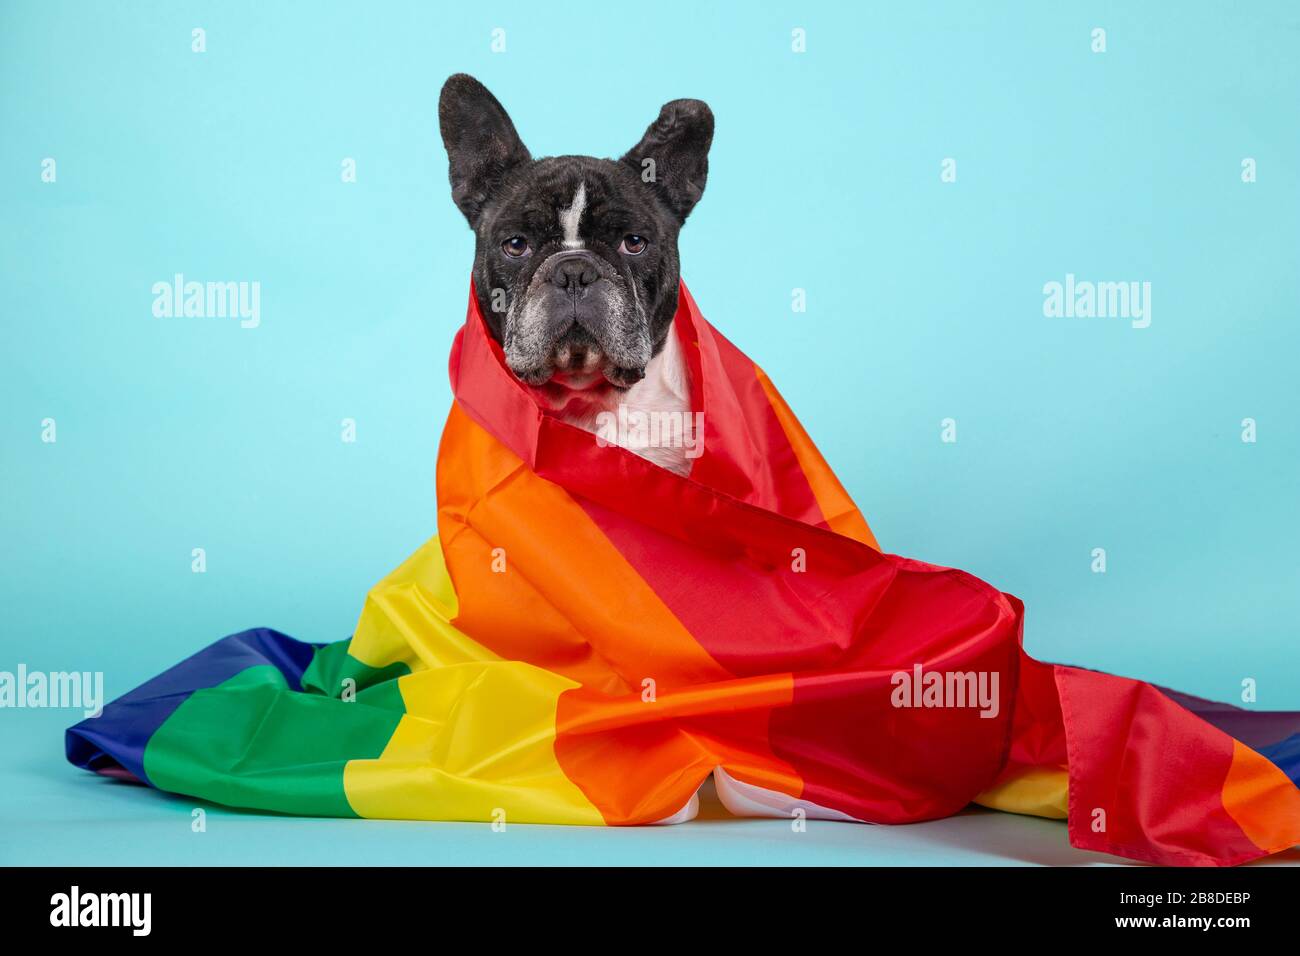 Magnifique bouledog français enveloppé d'un drapeau arc-en-ciel qui symbolise les droits des gays regardant la caméra. Isolé sur fond bleu. Conce LGBT Banque D'Images